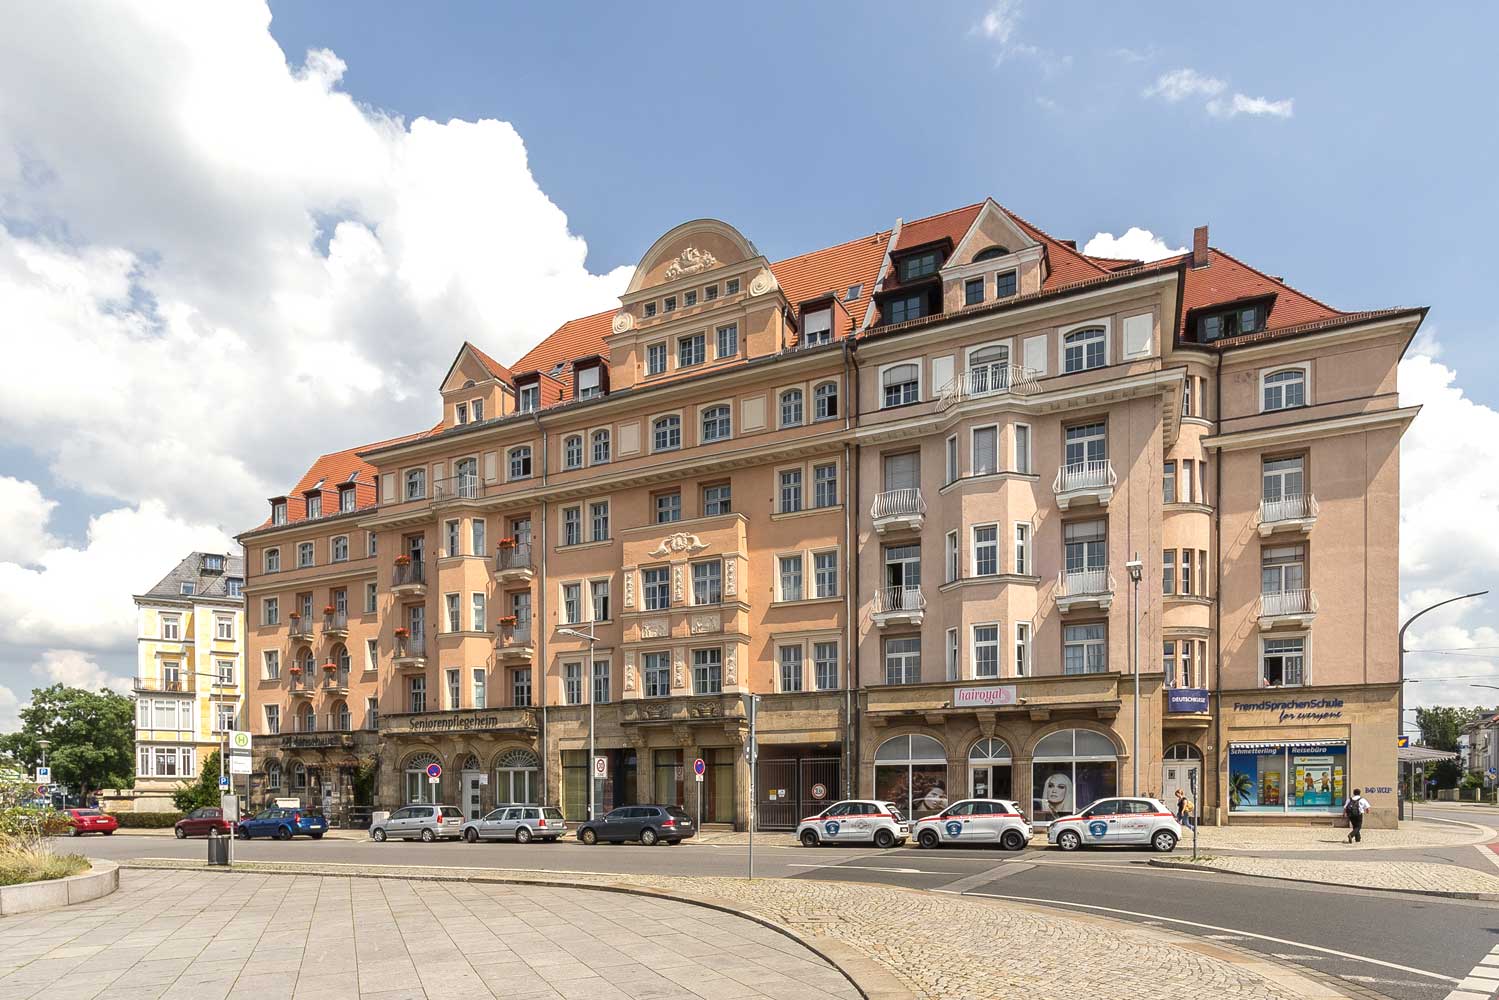 Umbau Hotel zu Pflegeheim Dresden